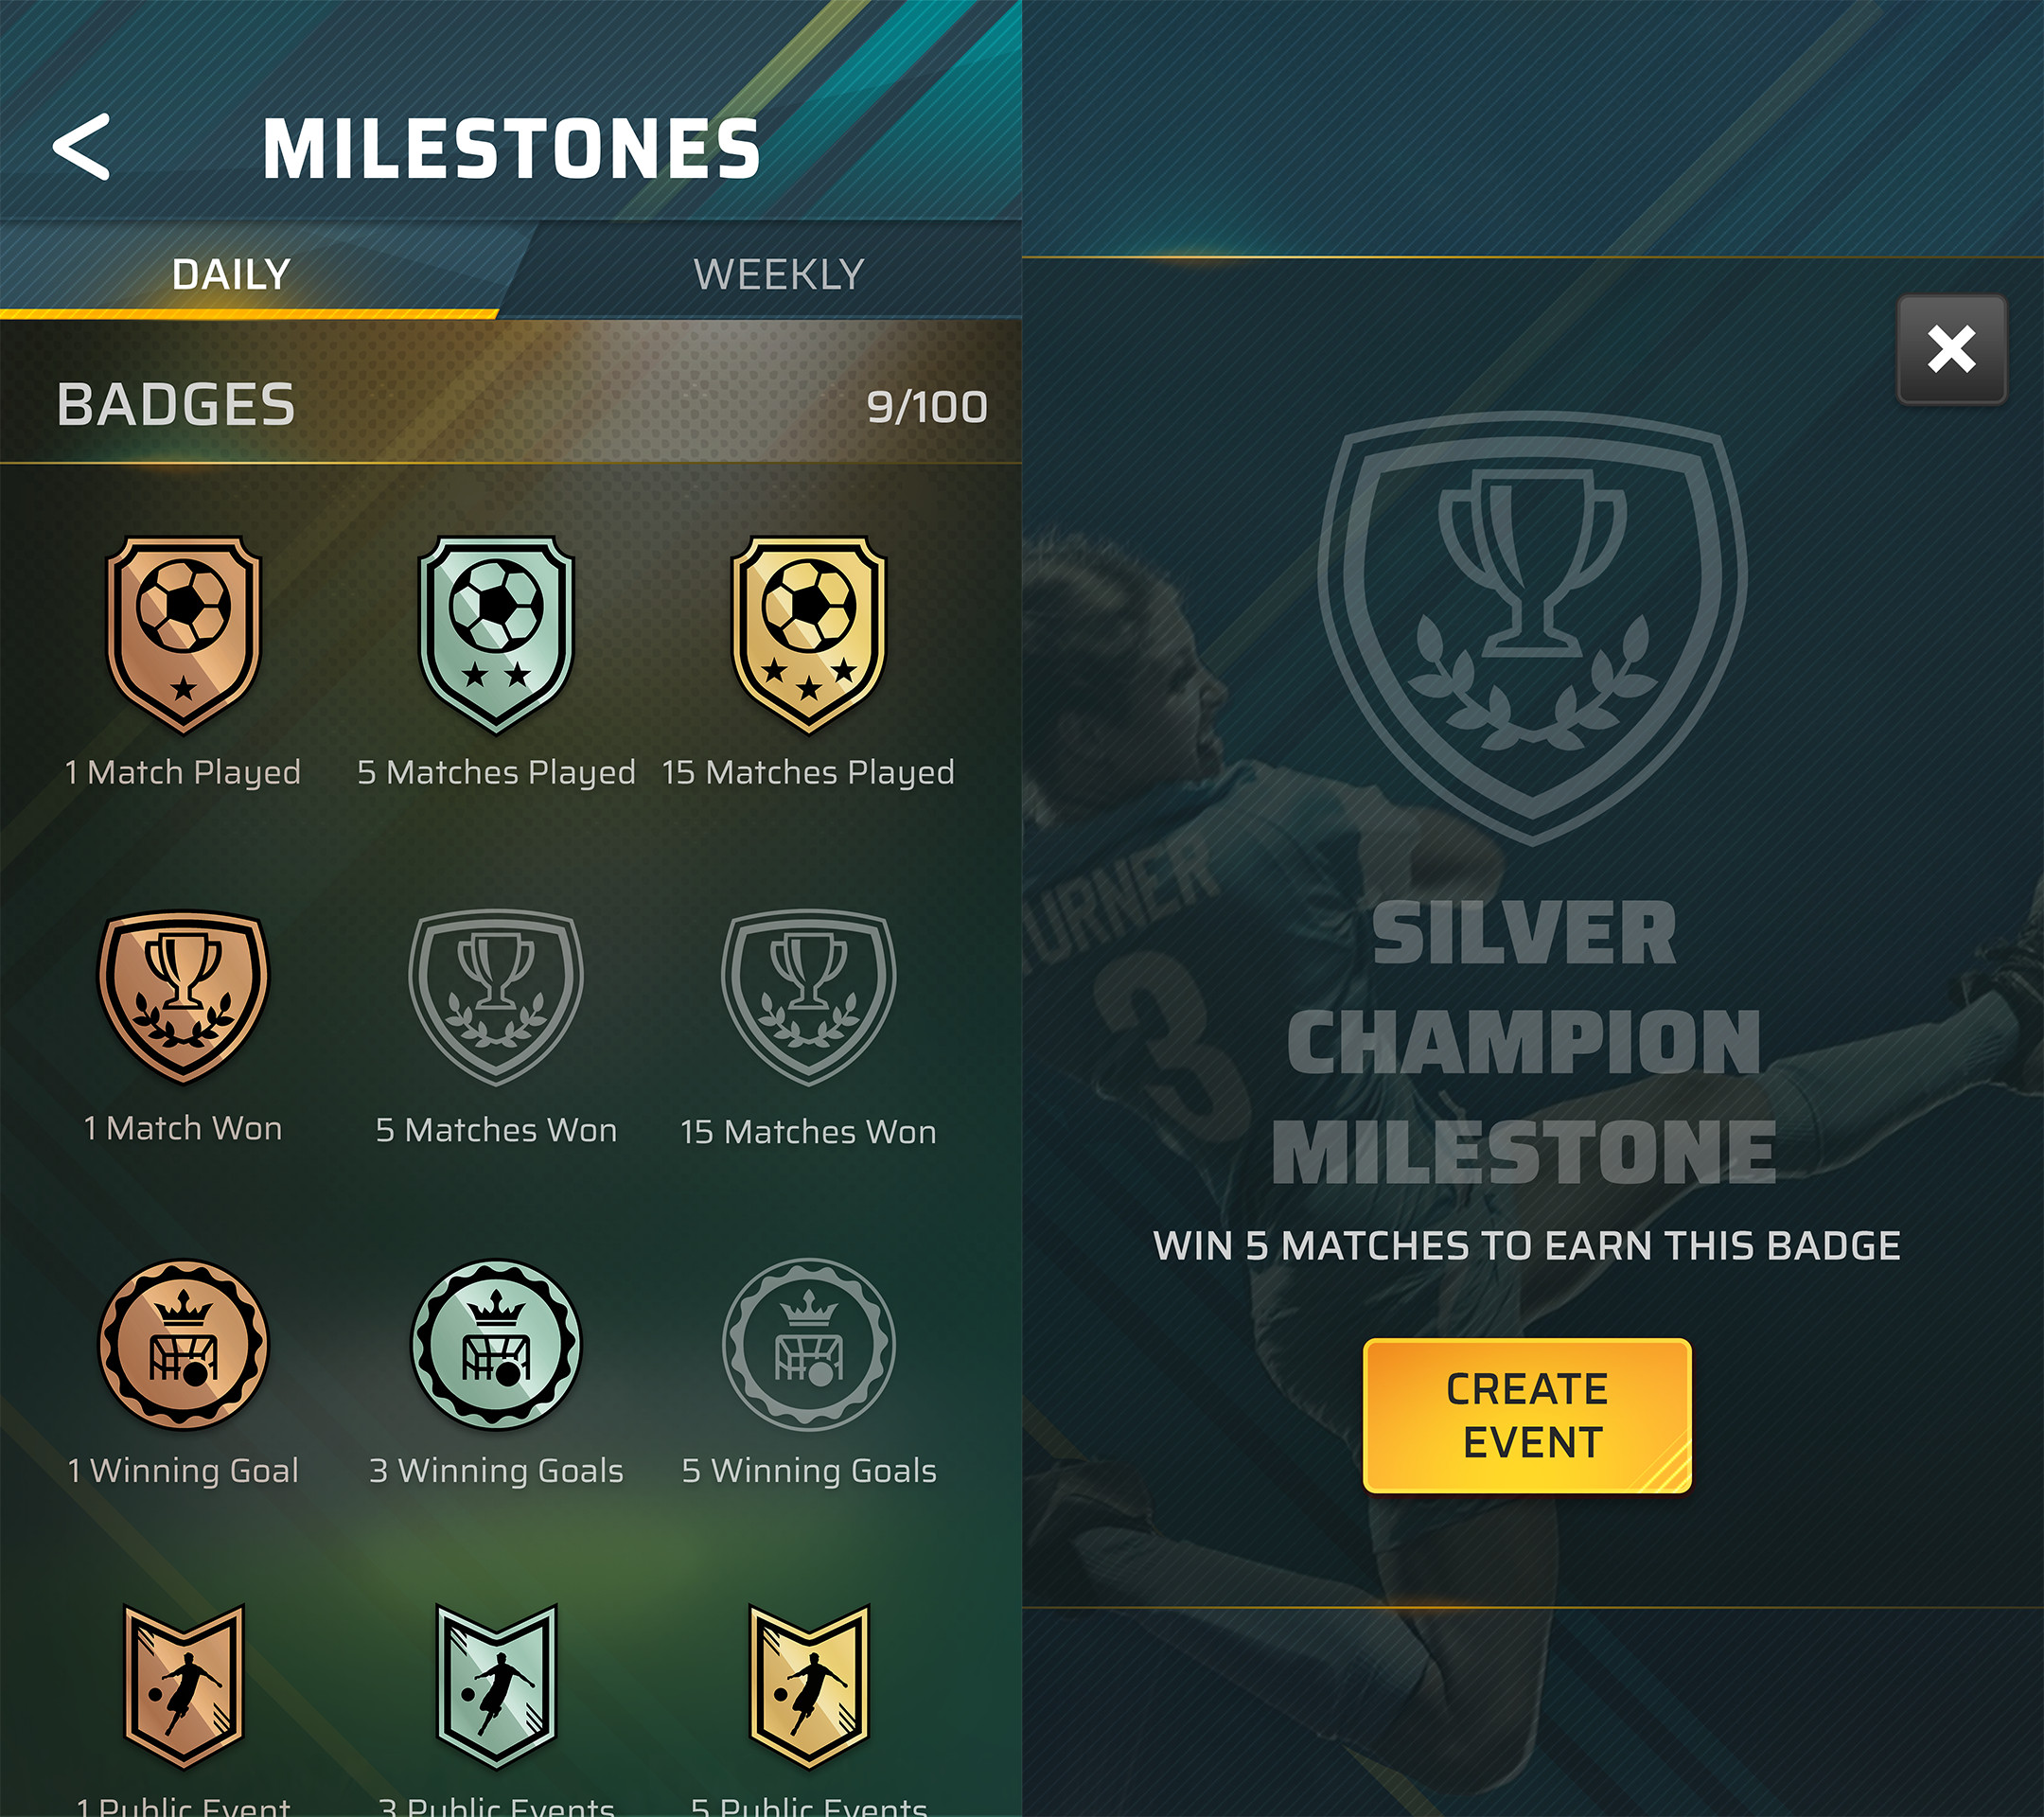 Milestones UI, Badges